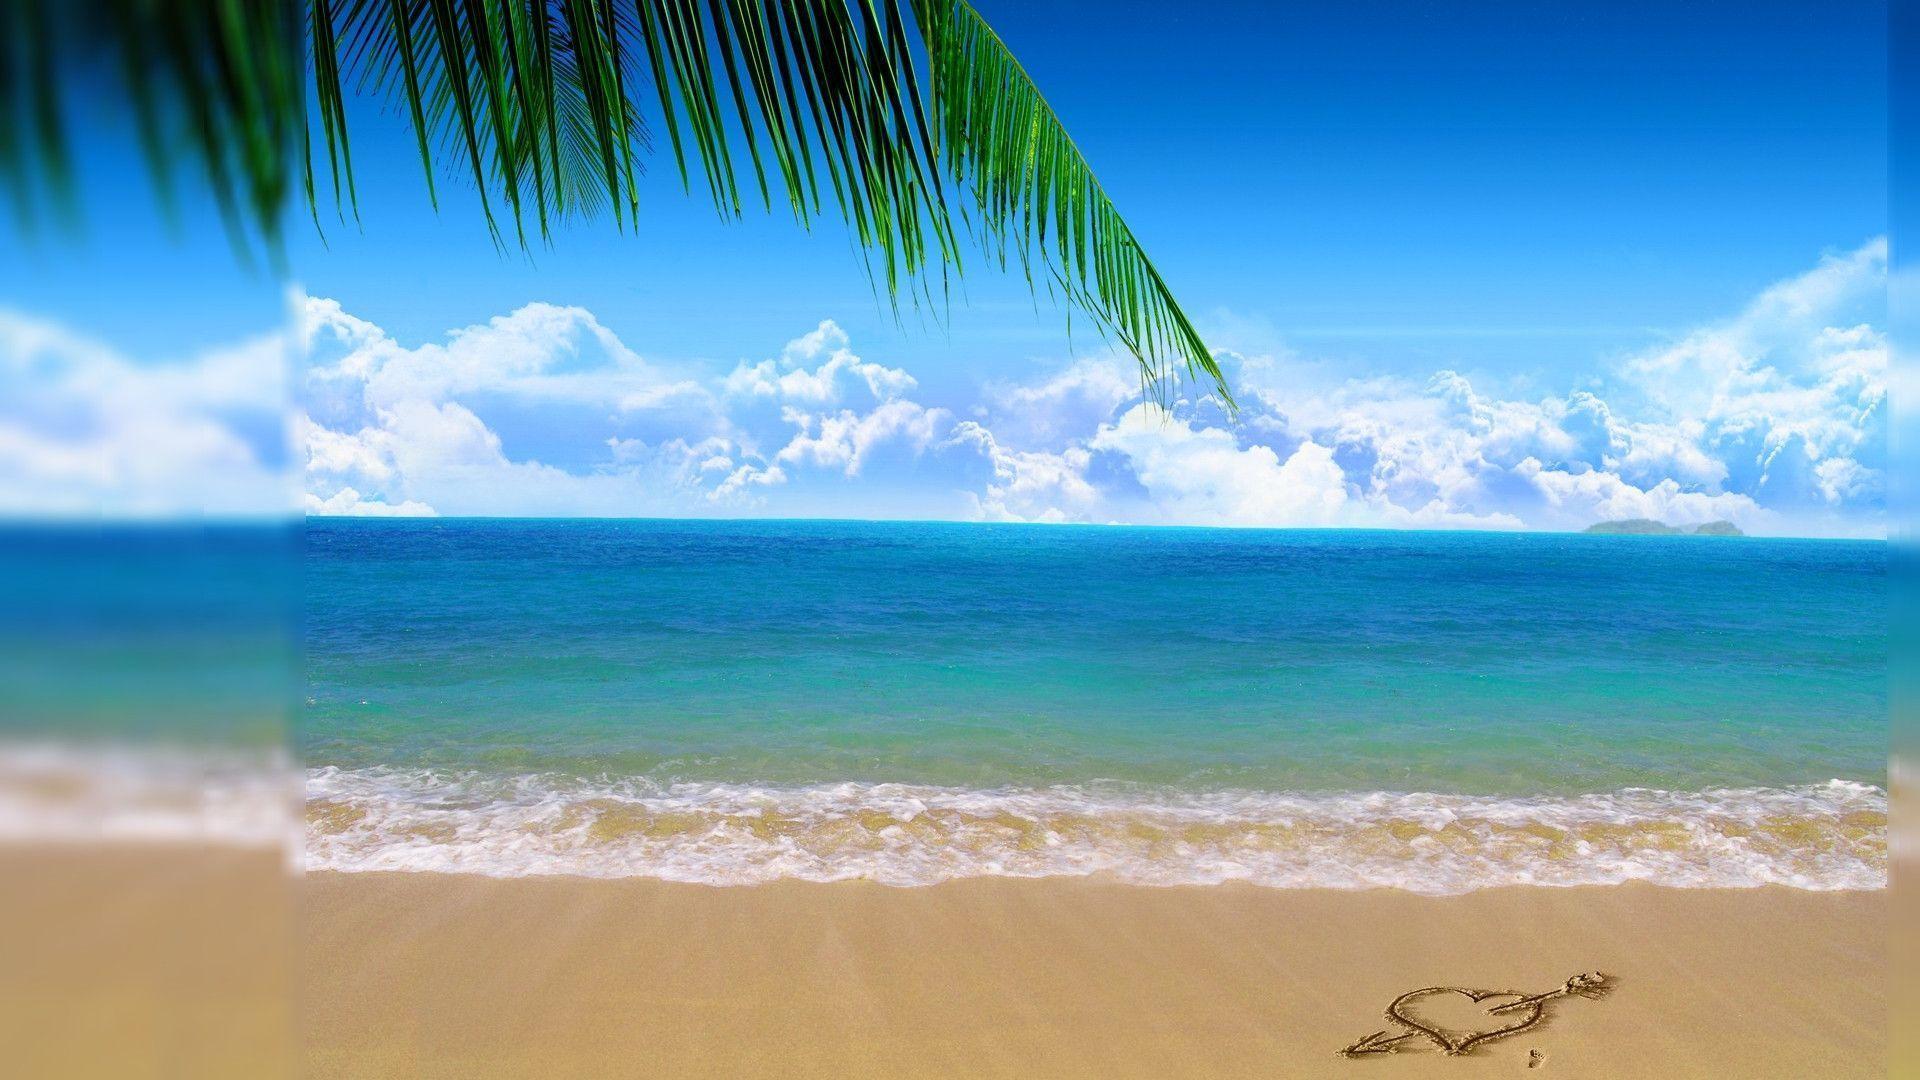 Desktop Background Beach 91137 HD Wallpaper: 1920x1080